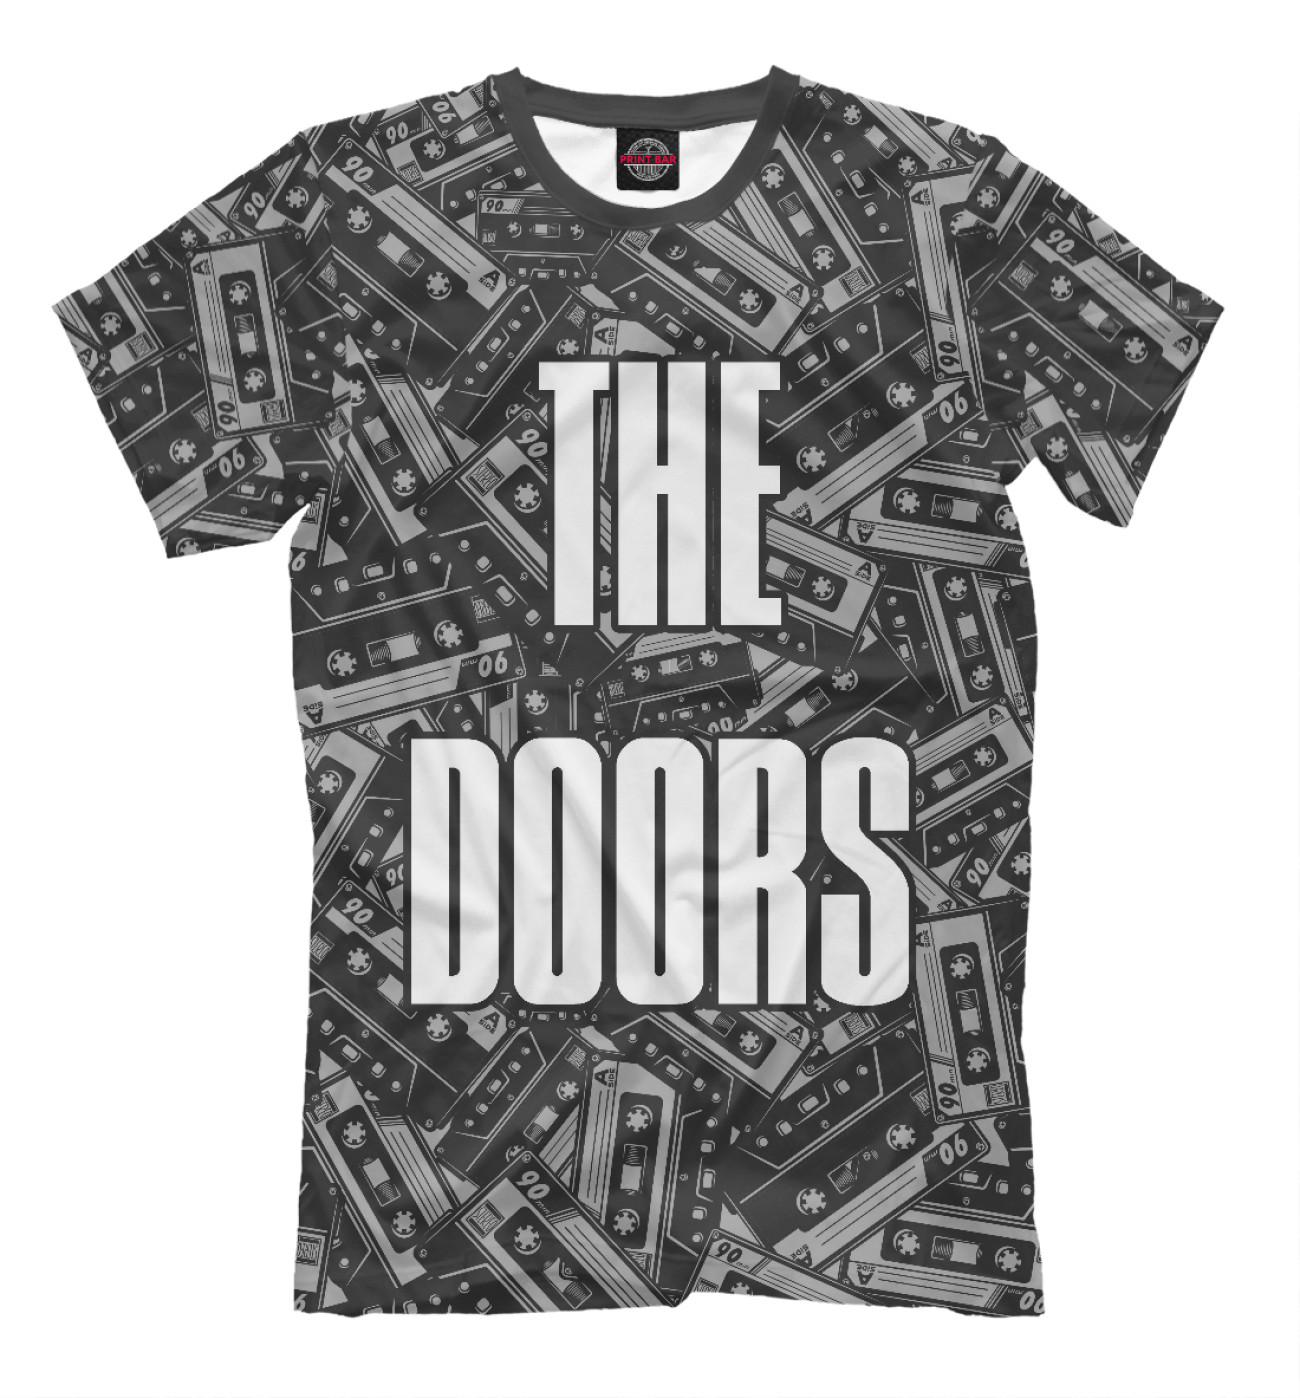 Мужская Футболка The Doors, артикул: DRS-390312-fut-2